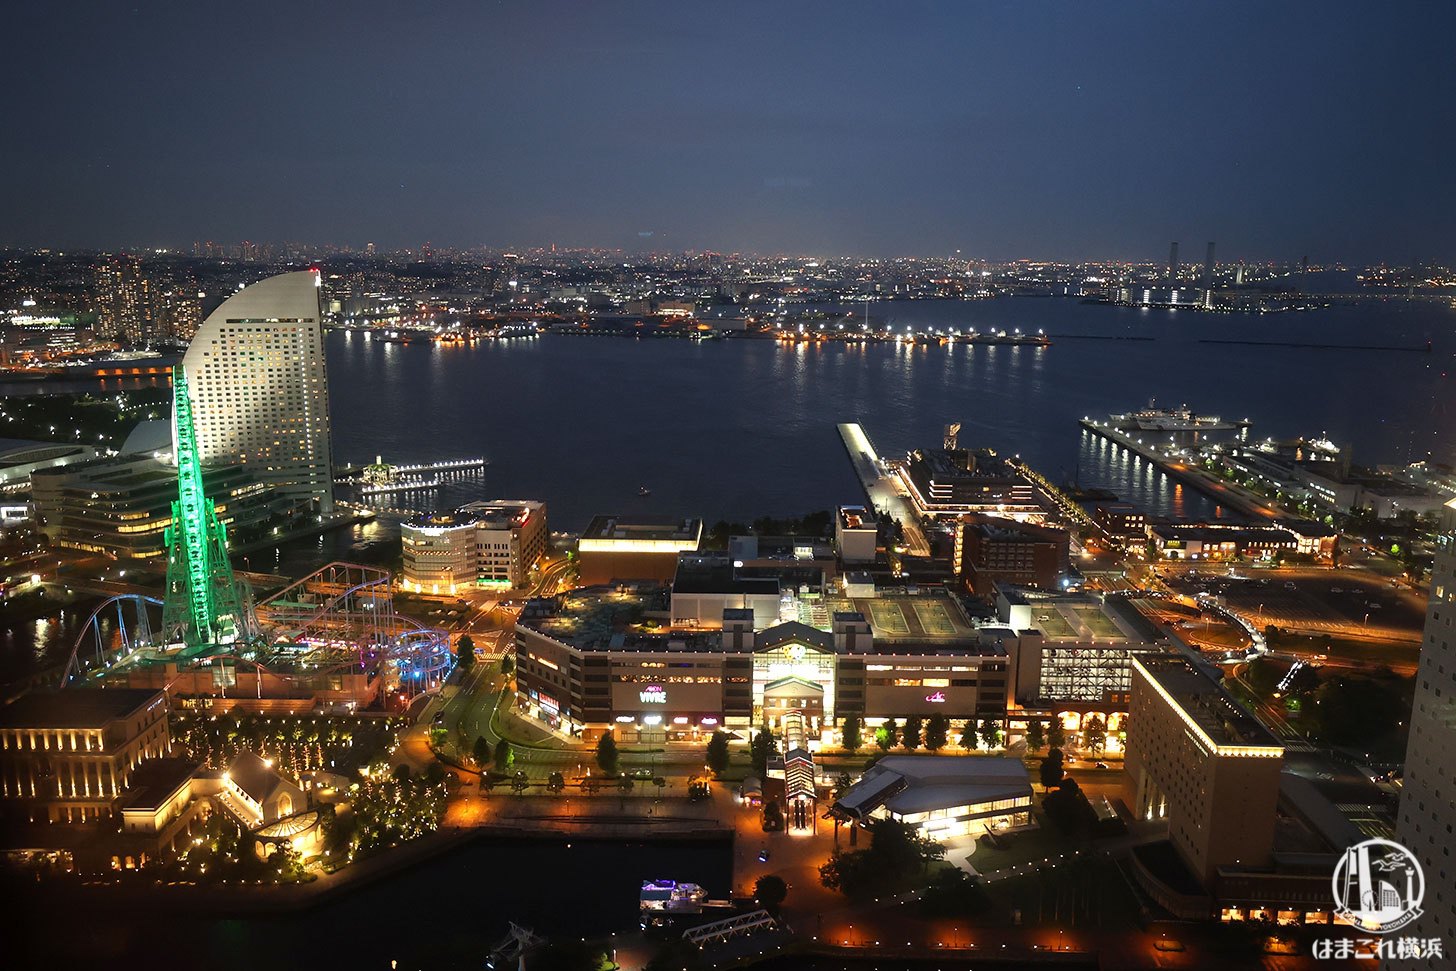 横浜北仲ノット無料展望台から見た夜景 横浜ワールドポーターズや東京側